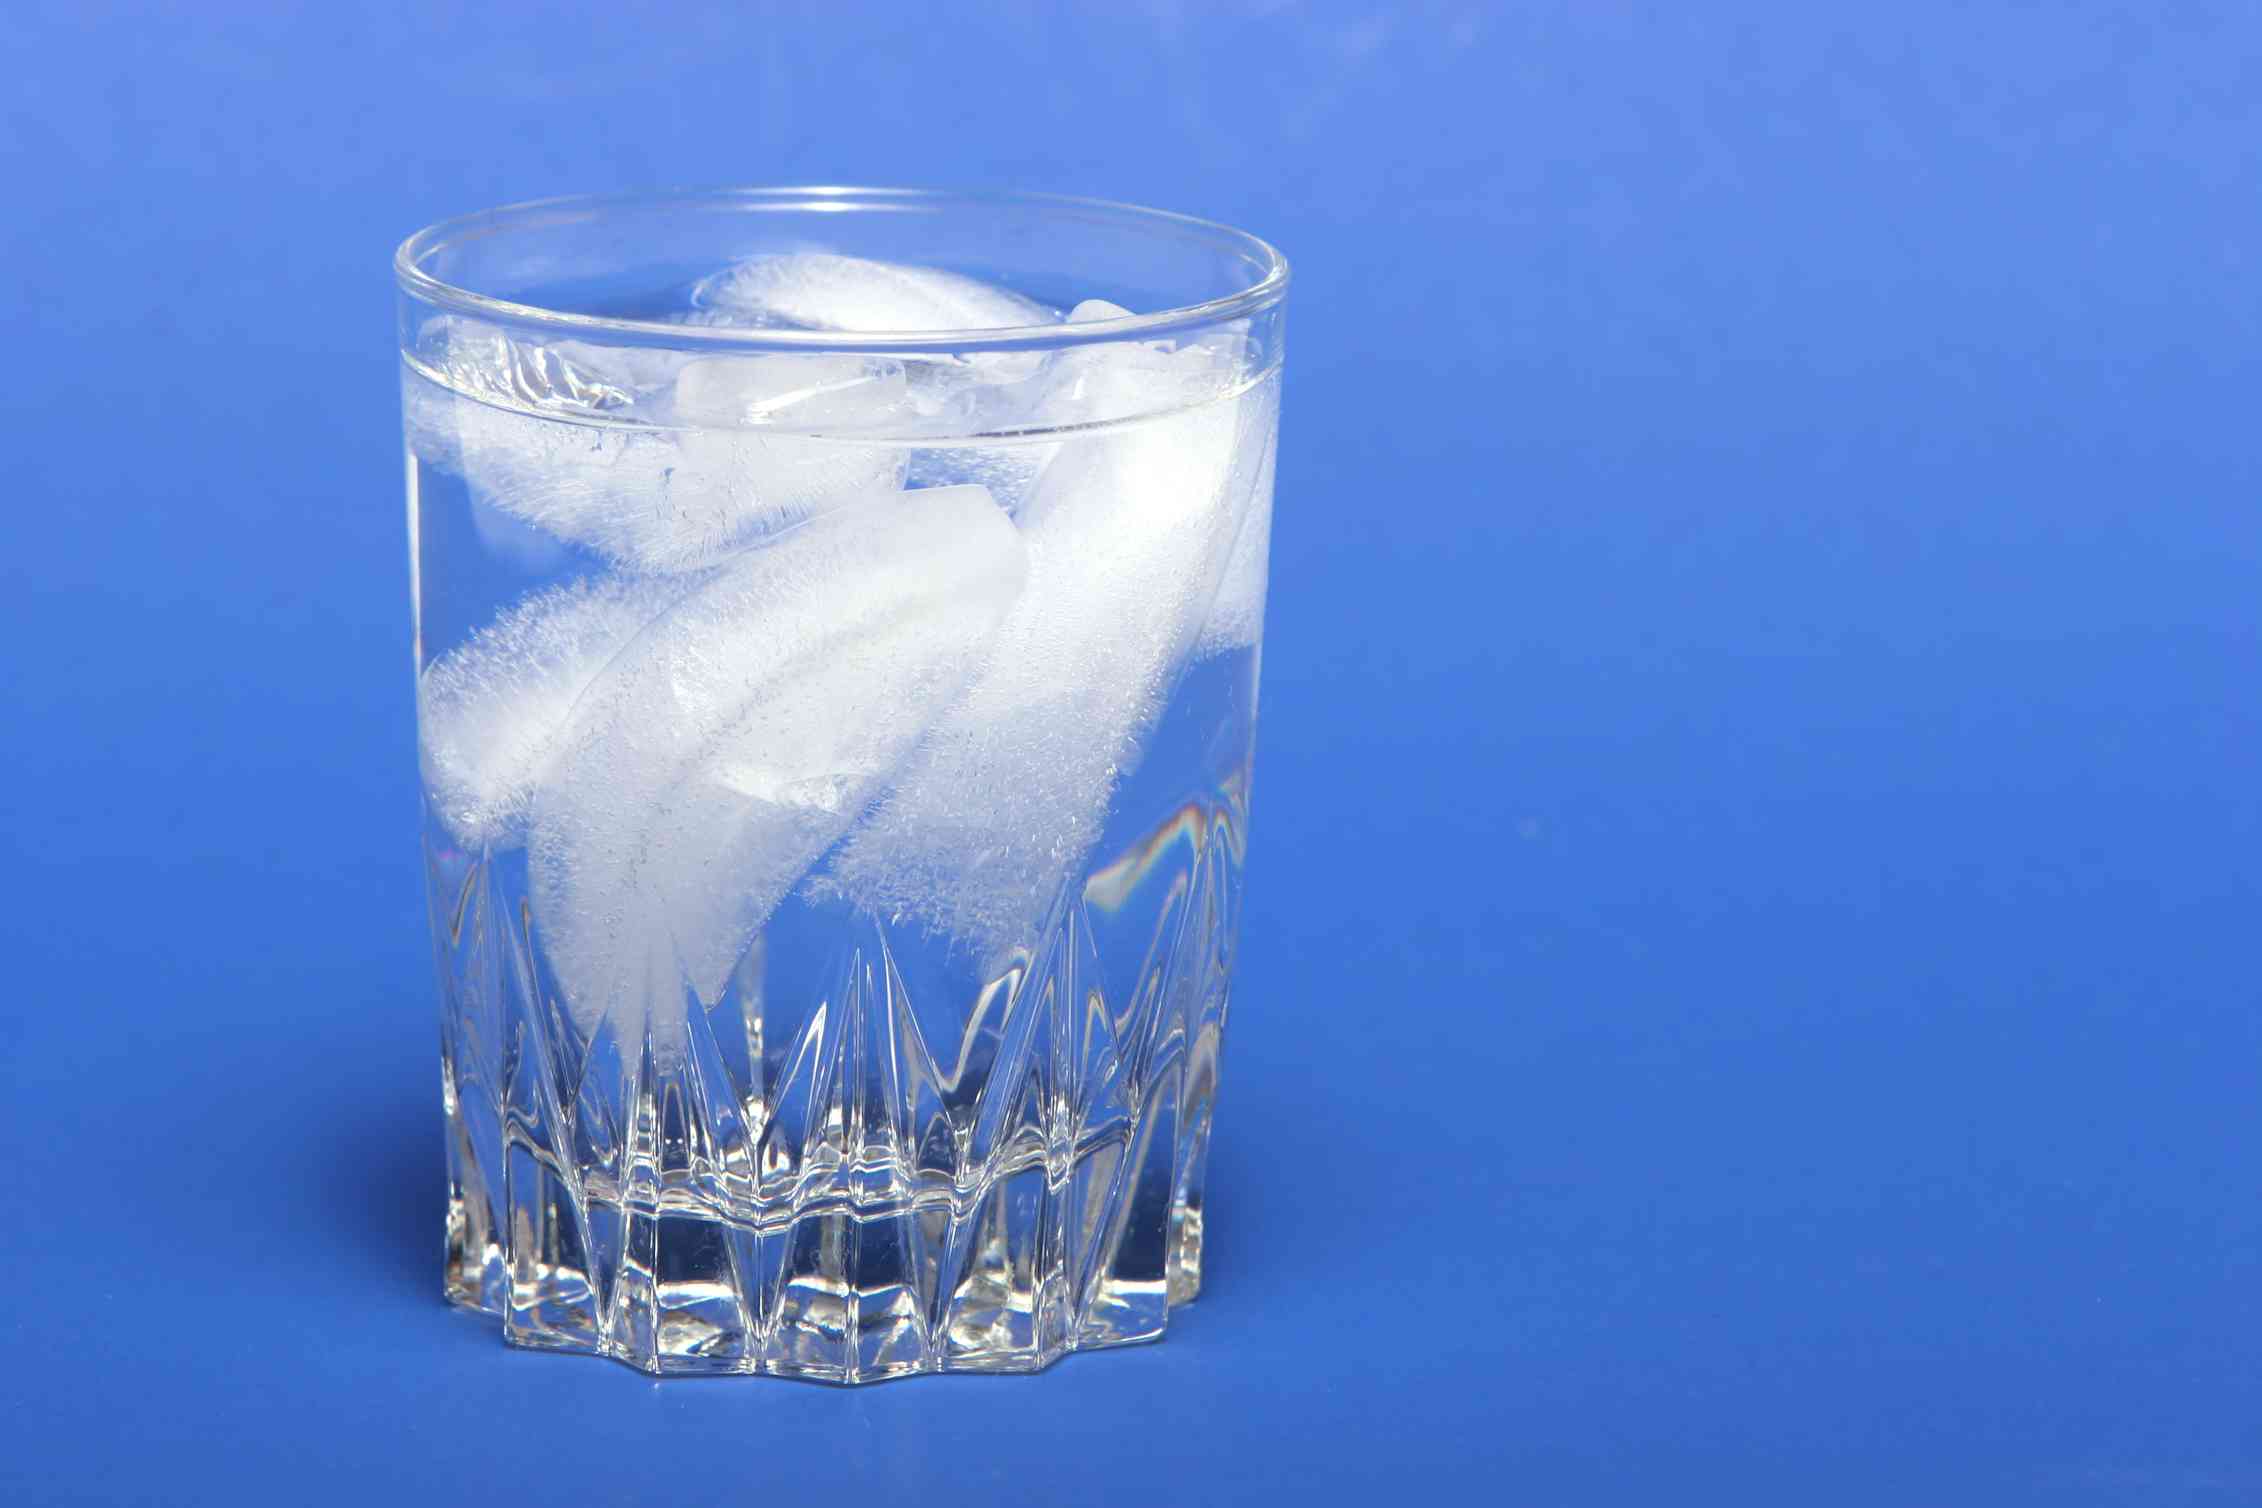 Растворение льда. Лед в стакане. Вода со льдом. Стакан воды со льдом. Замерзшая вода.